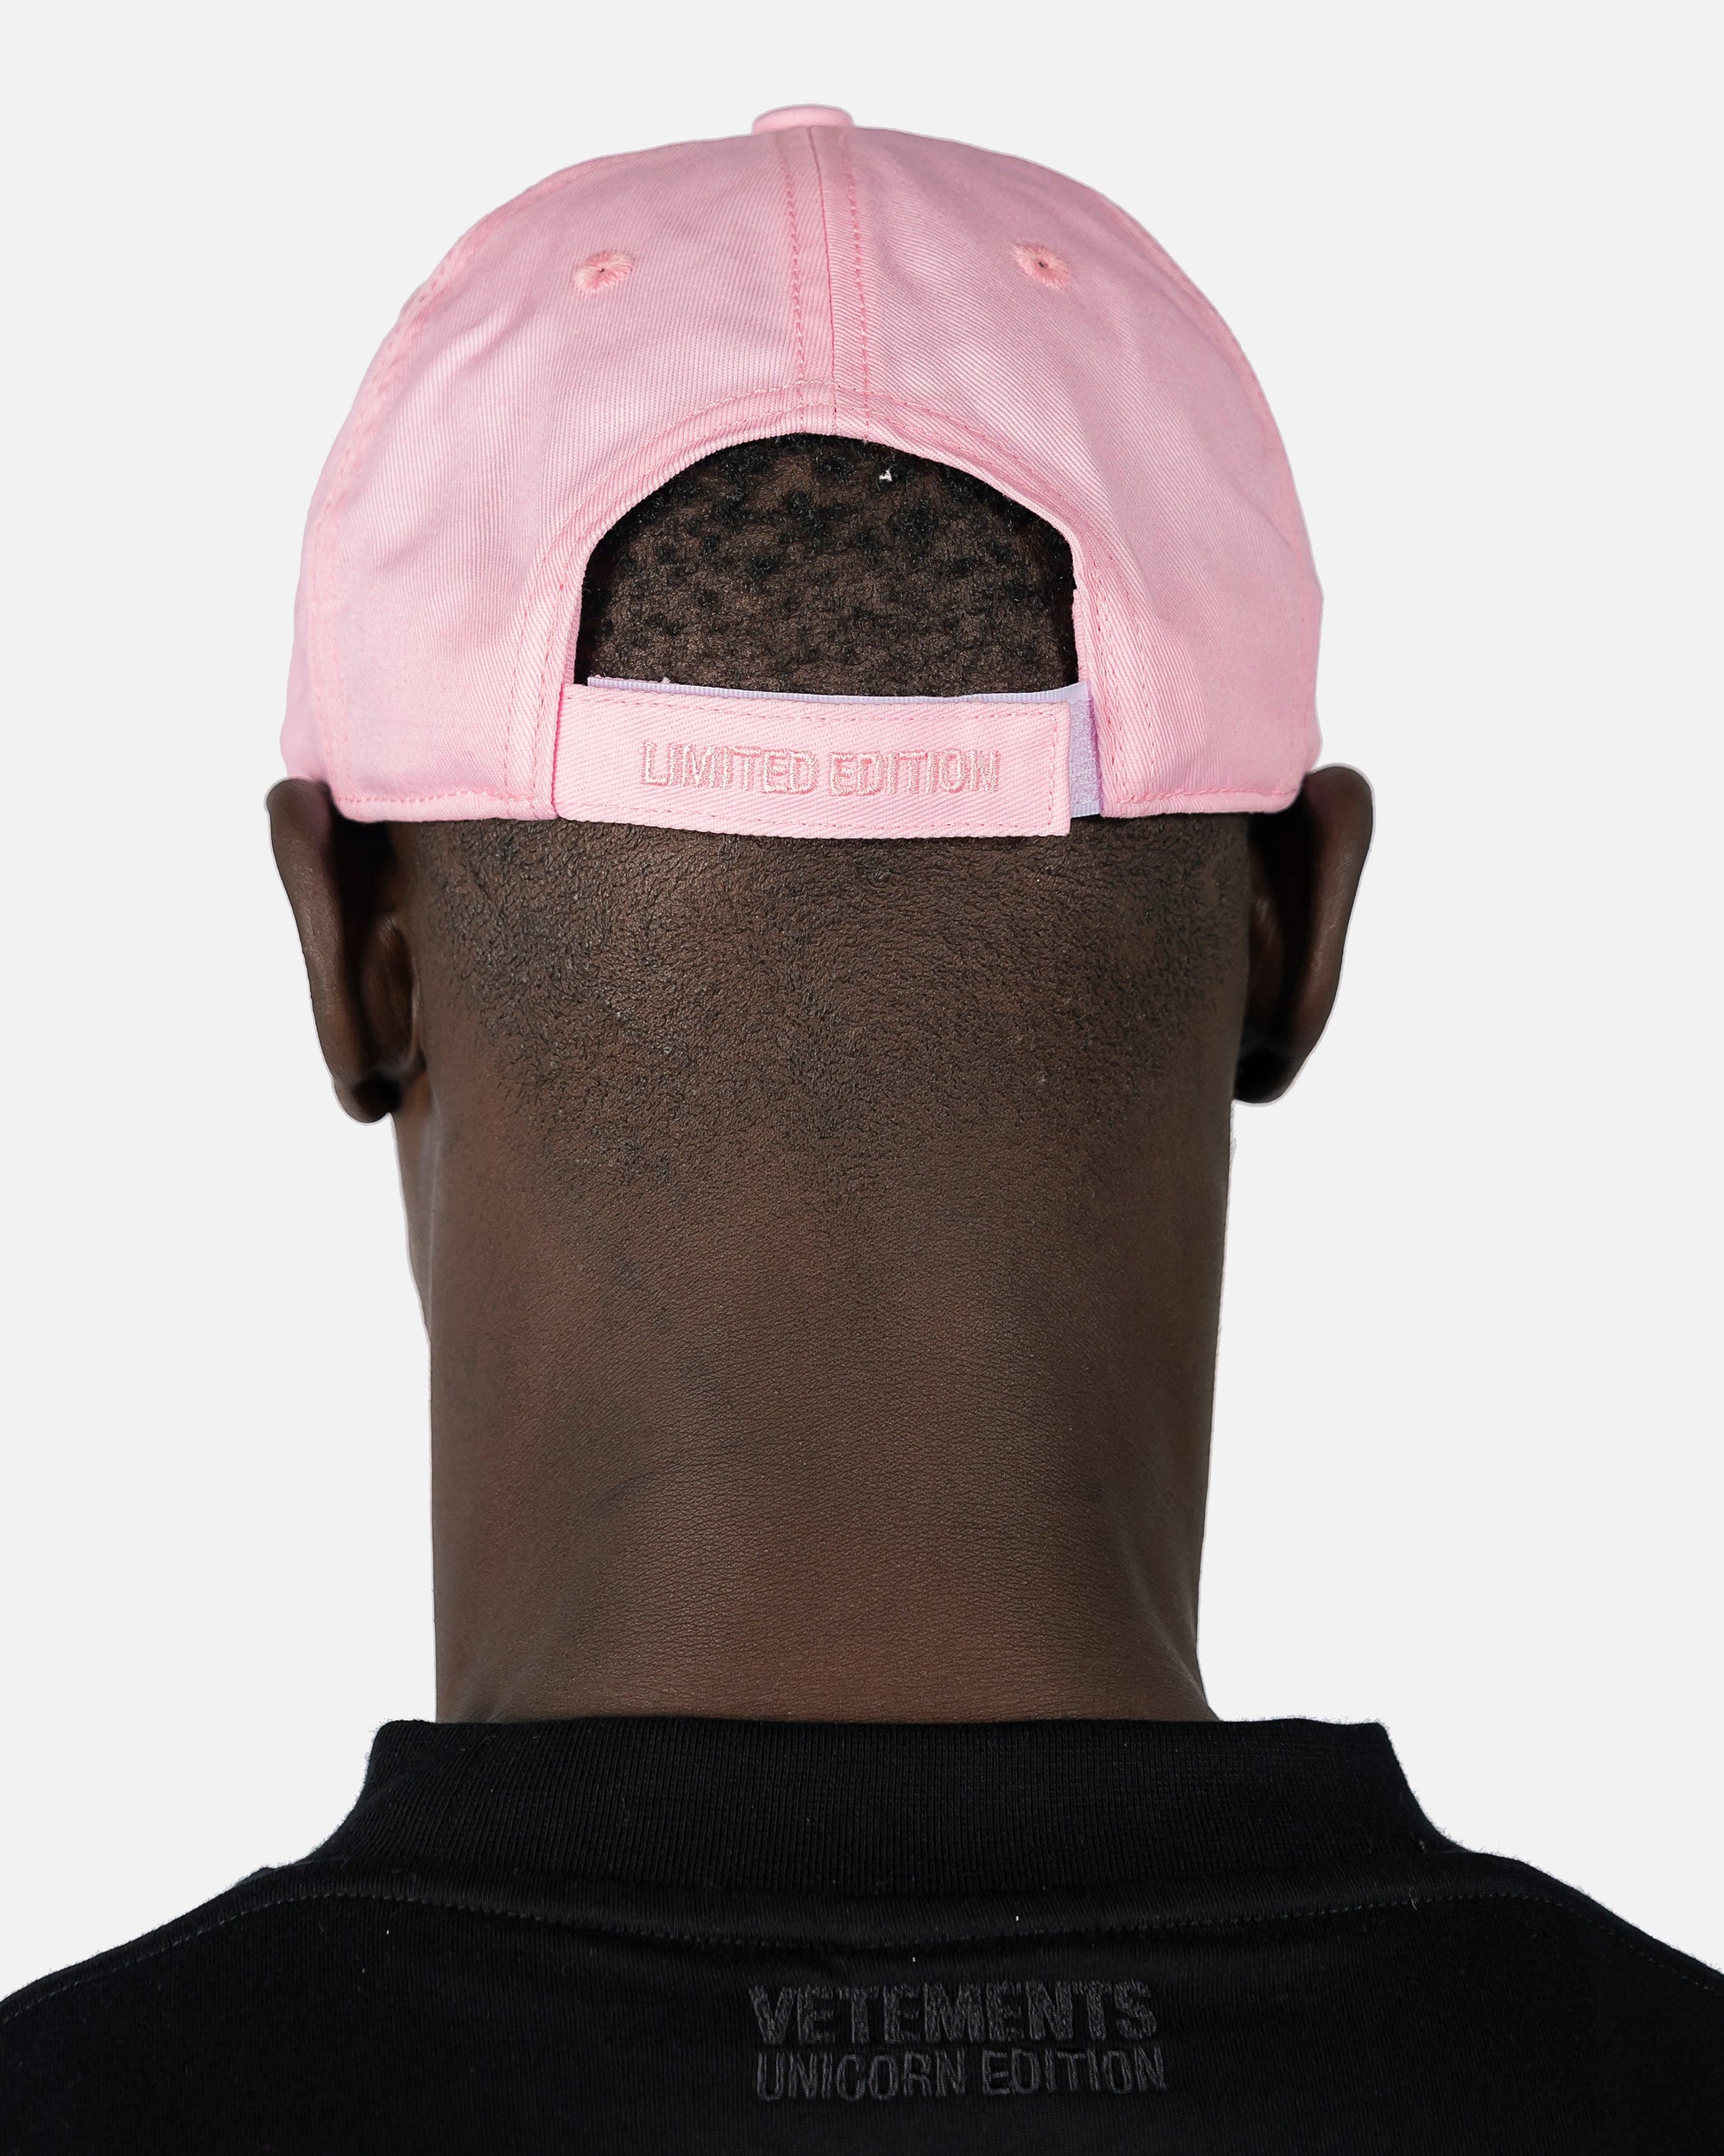 VETEMENTS Men's Hats Iconic Logo Cap in Baby Pink